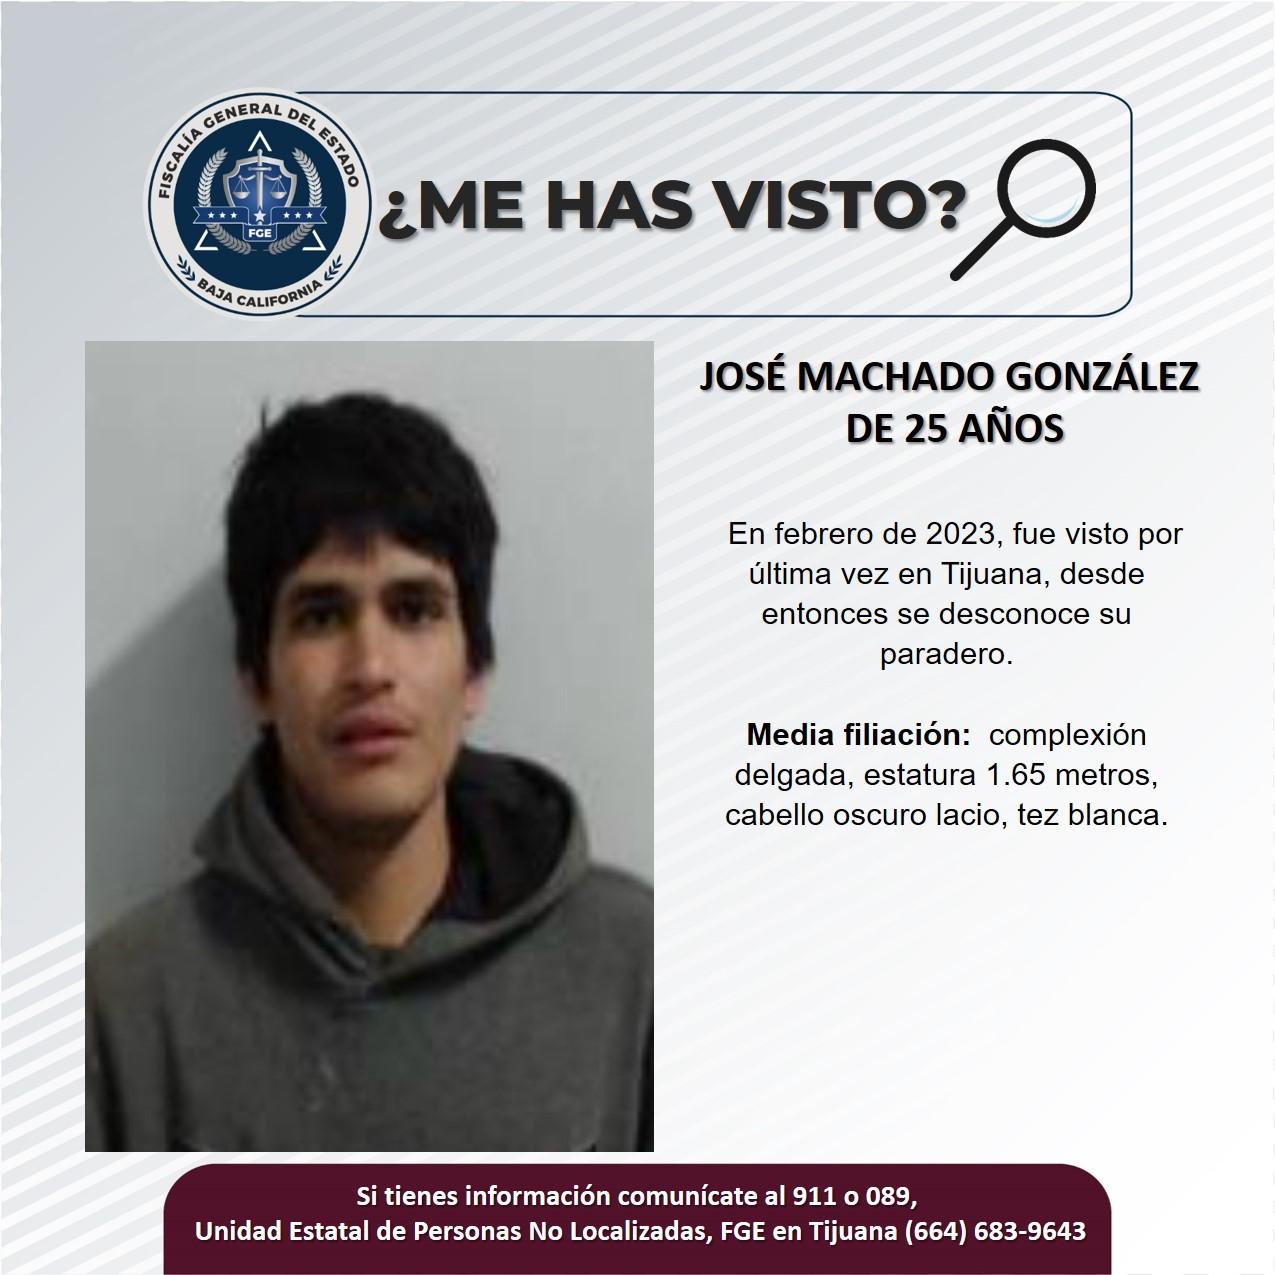 Servicio social: Se busca a José Machado González de 25 años